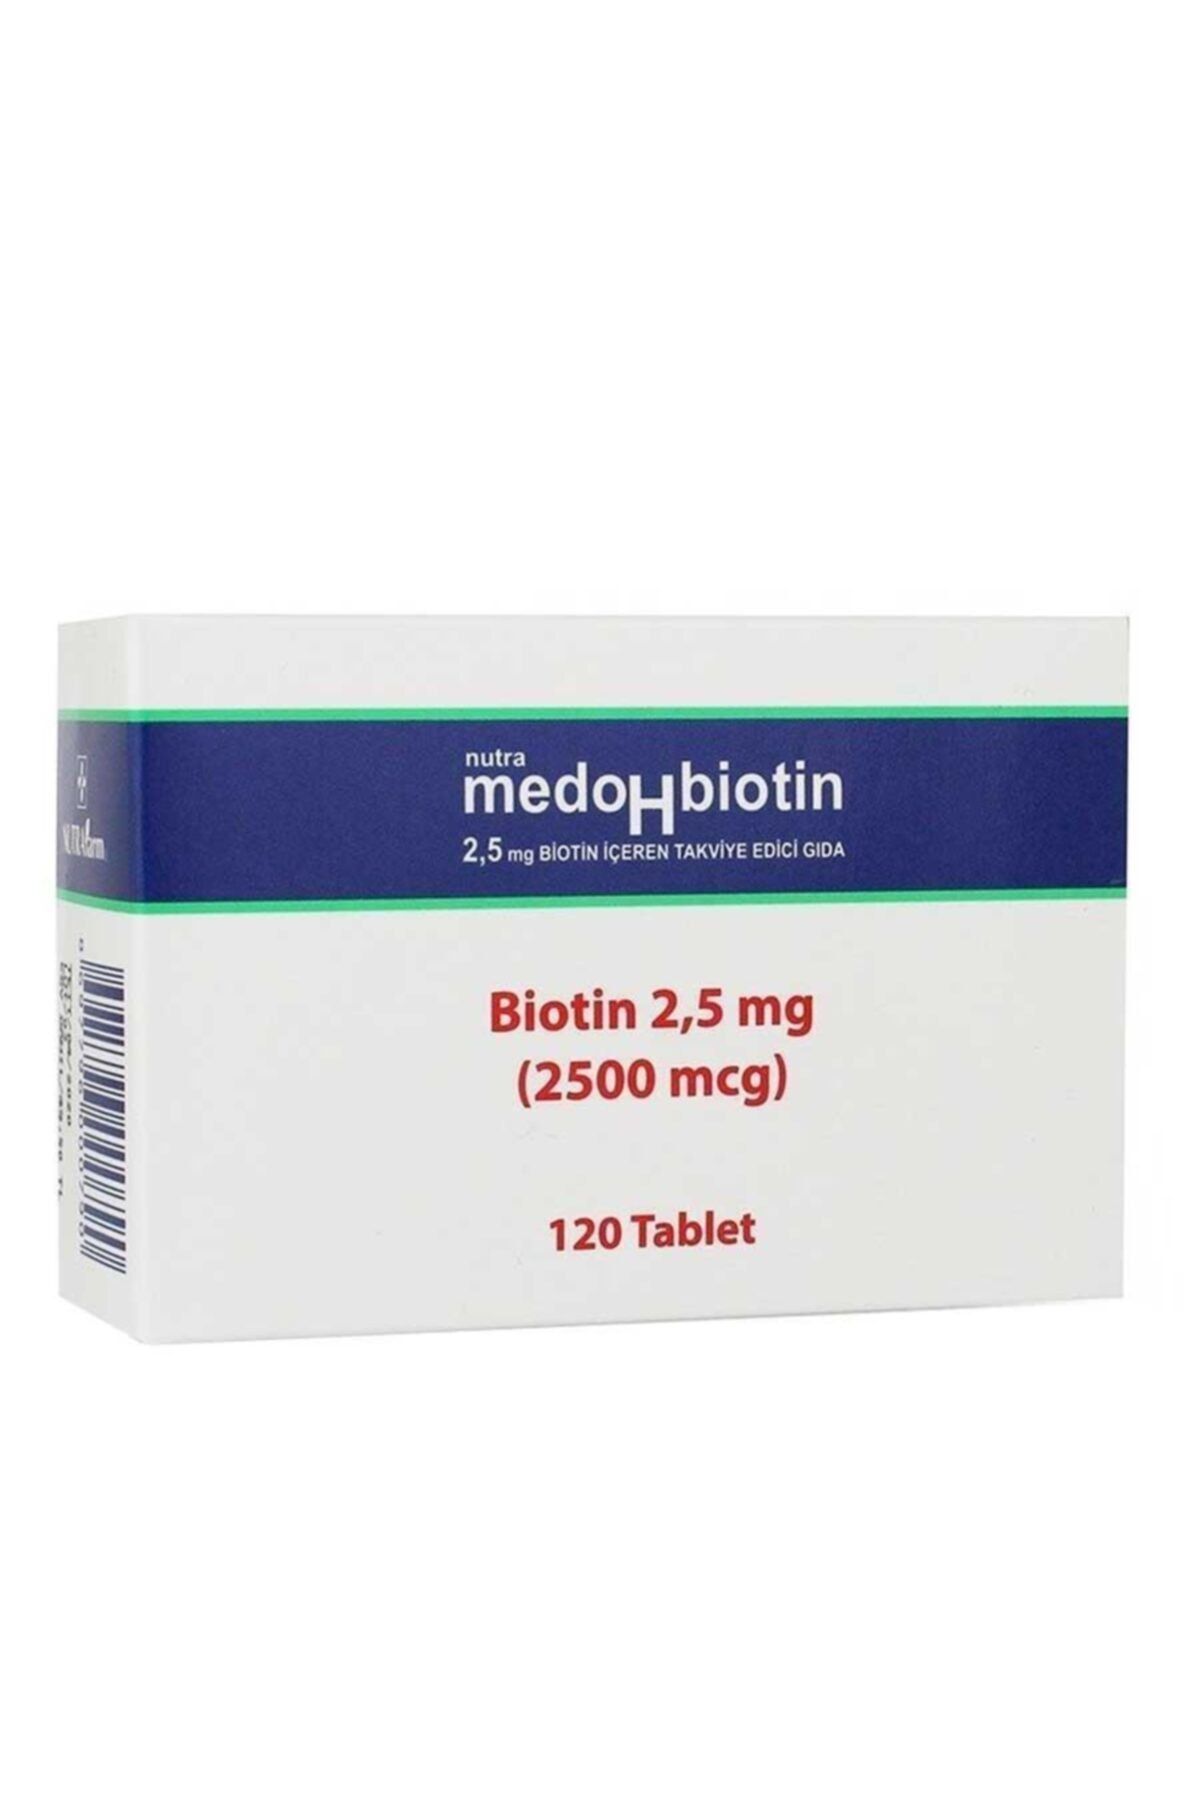 Nutrafarm Medohbiotin 2,5 Mg 120 Tablet (saç, Cilt Ve Tırnak Güçlendirici Vitamin ) Biotin Gıda Takviyesi